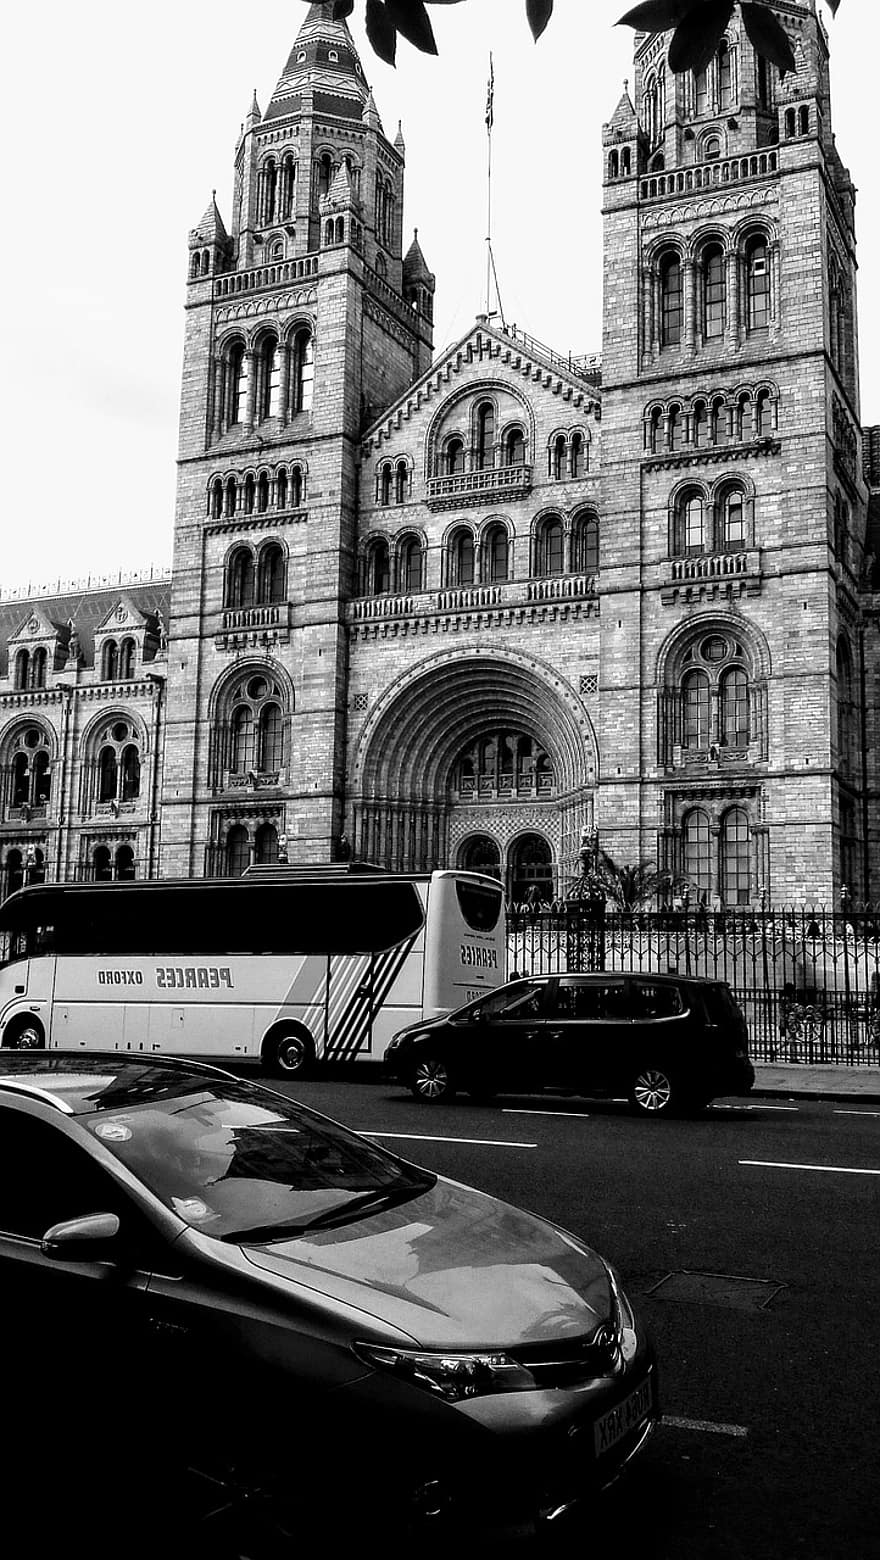 자연사 박물관, 런던, 건축물, 경계표, 박물관, 고딕 리바이벌 건축, 차, 버스, 검정색과 흰색, 교통, 운송 수단